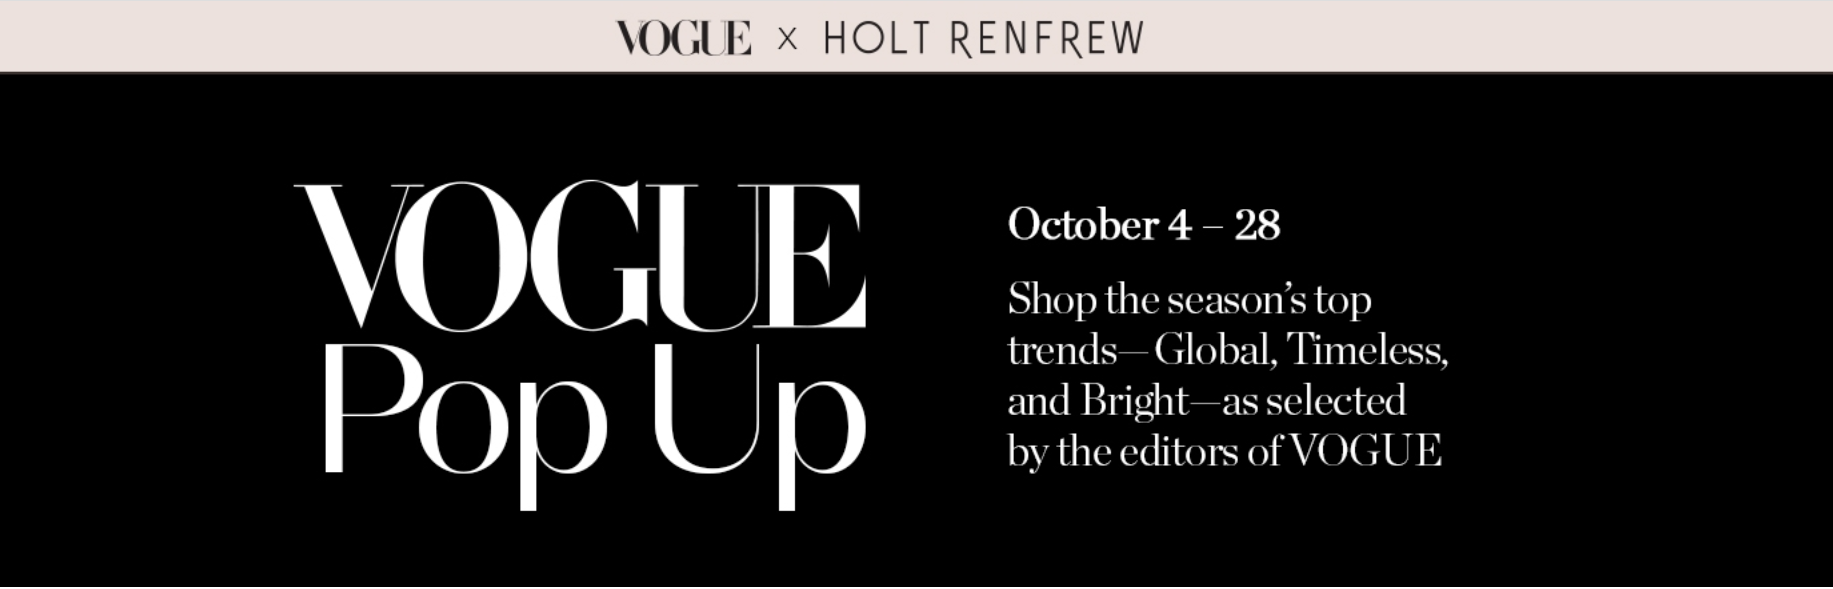 Holt Renfrew x Vogue